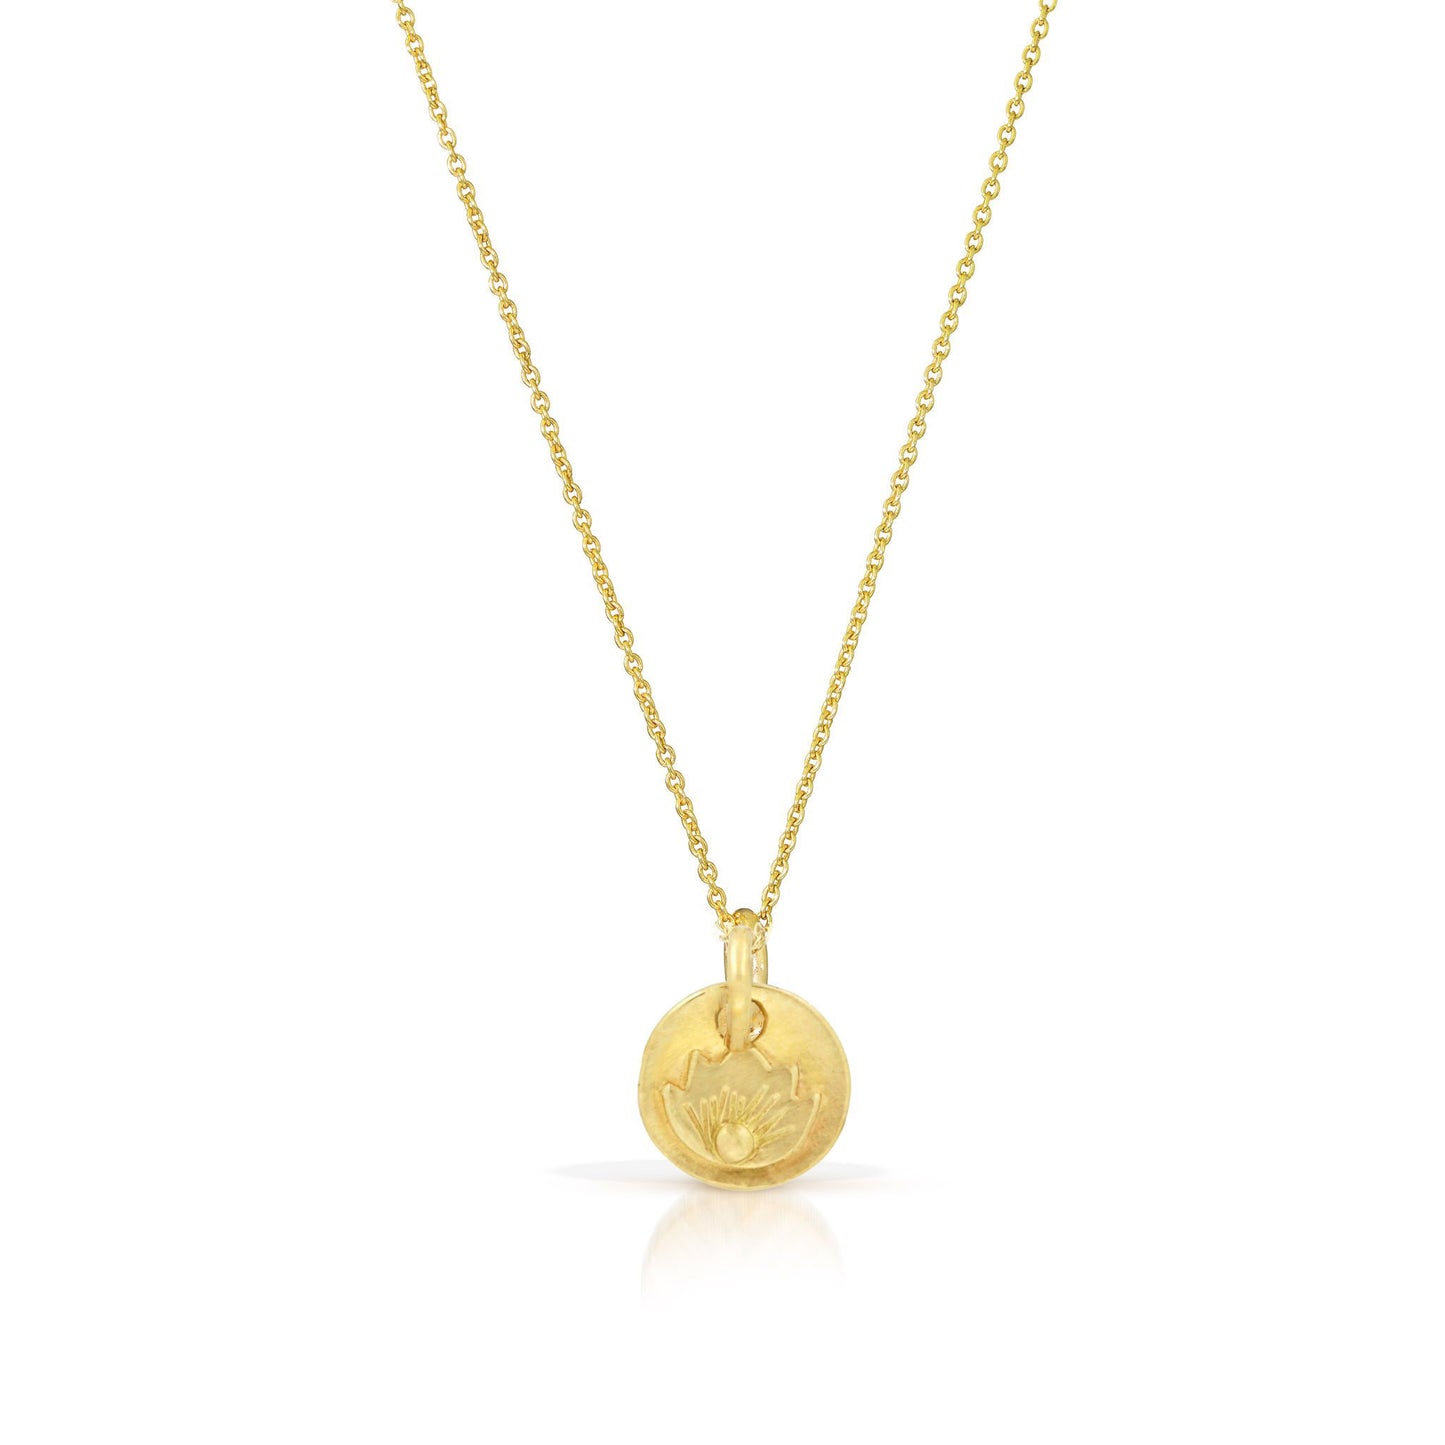 Lotus charm necklace by Jen Lesea Designs